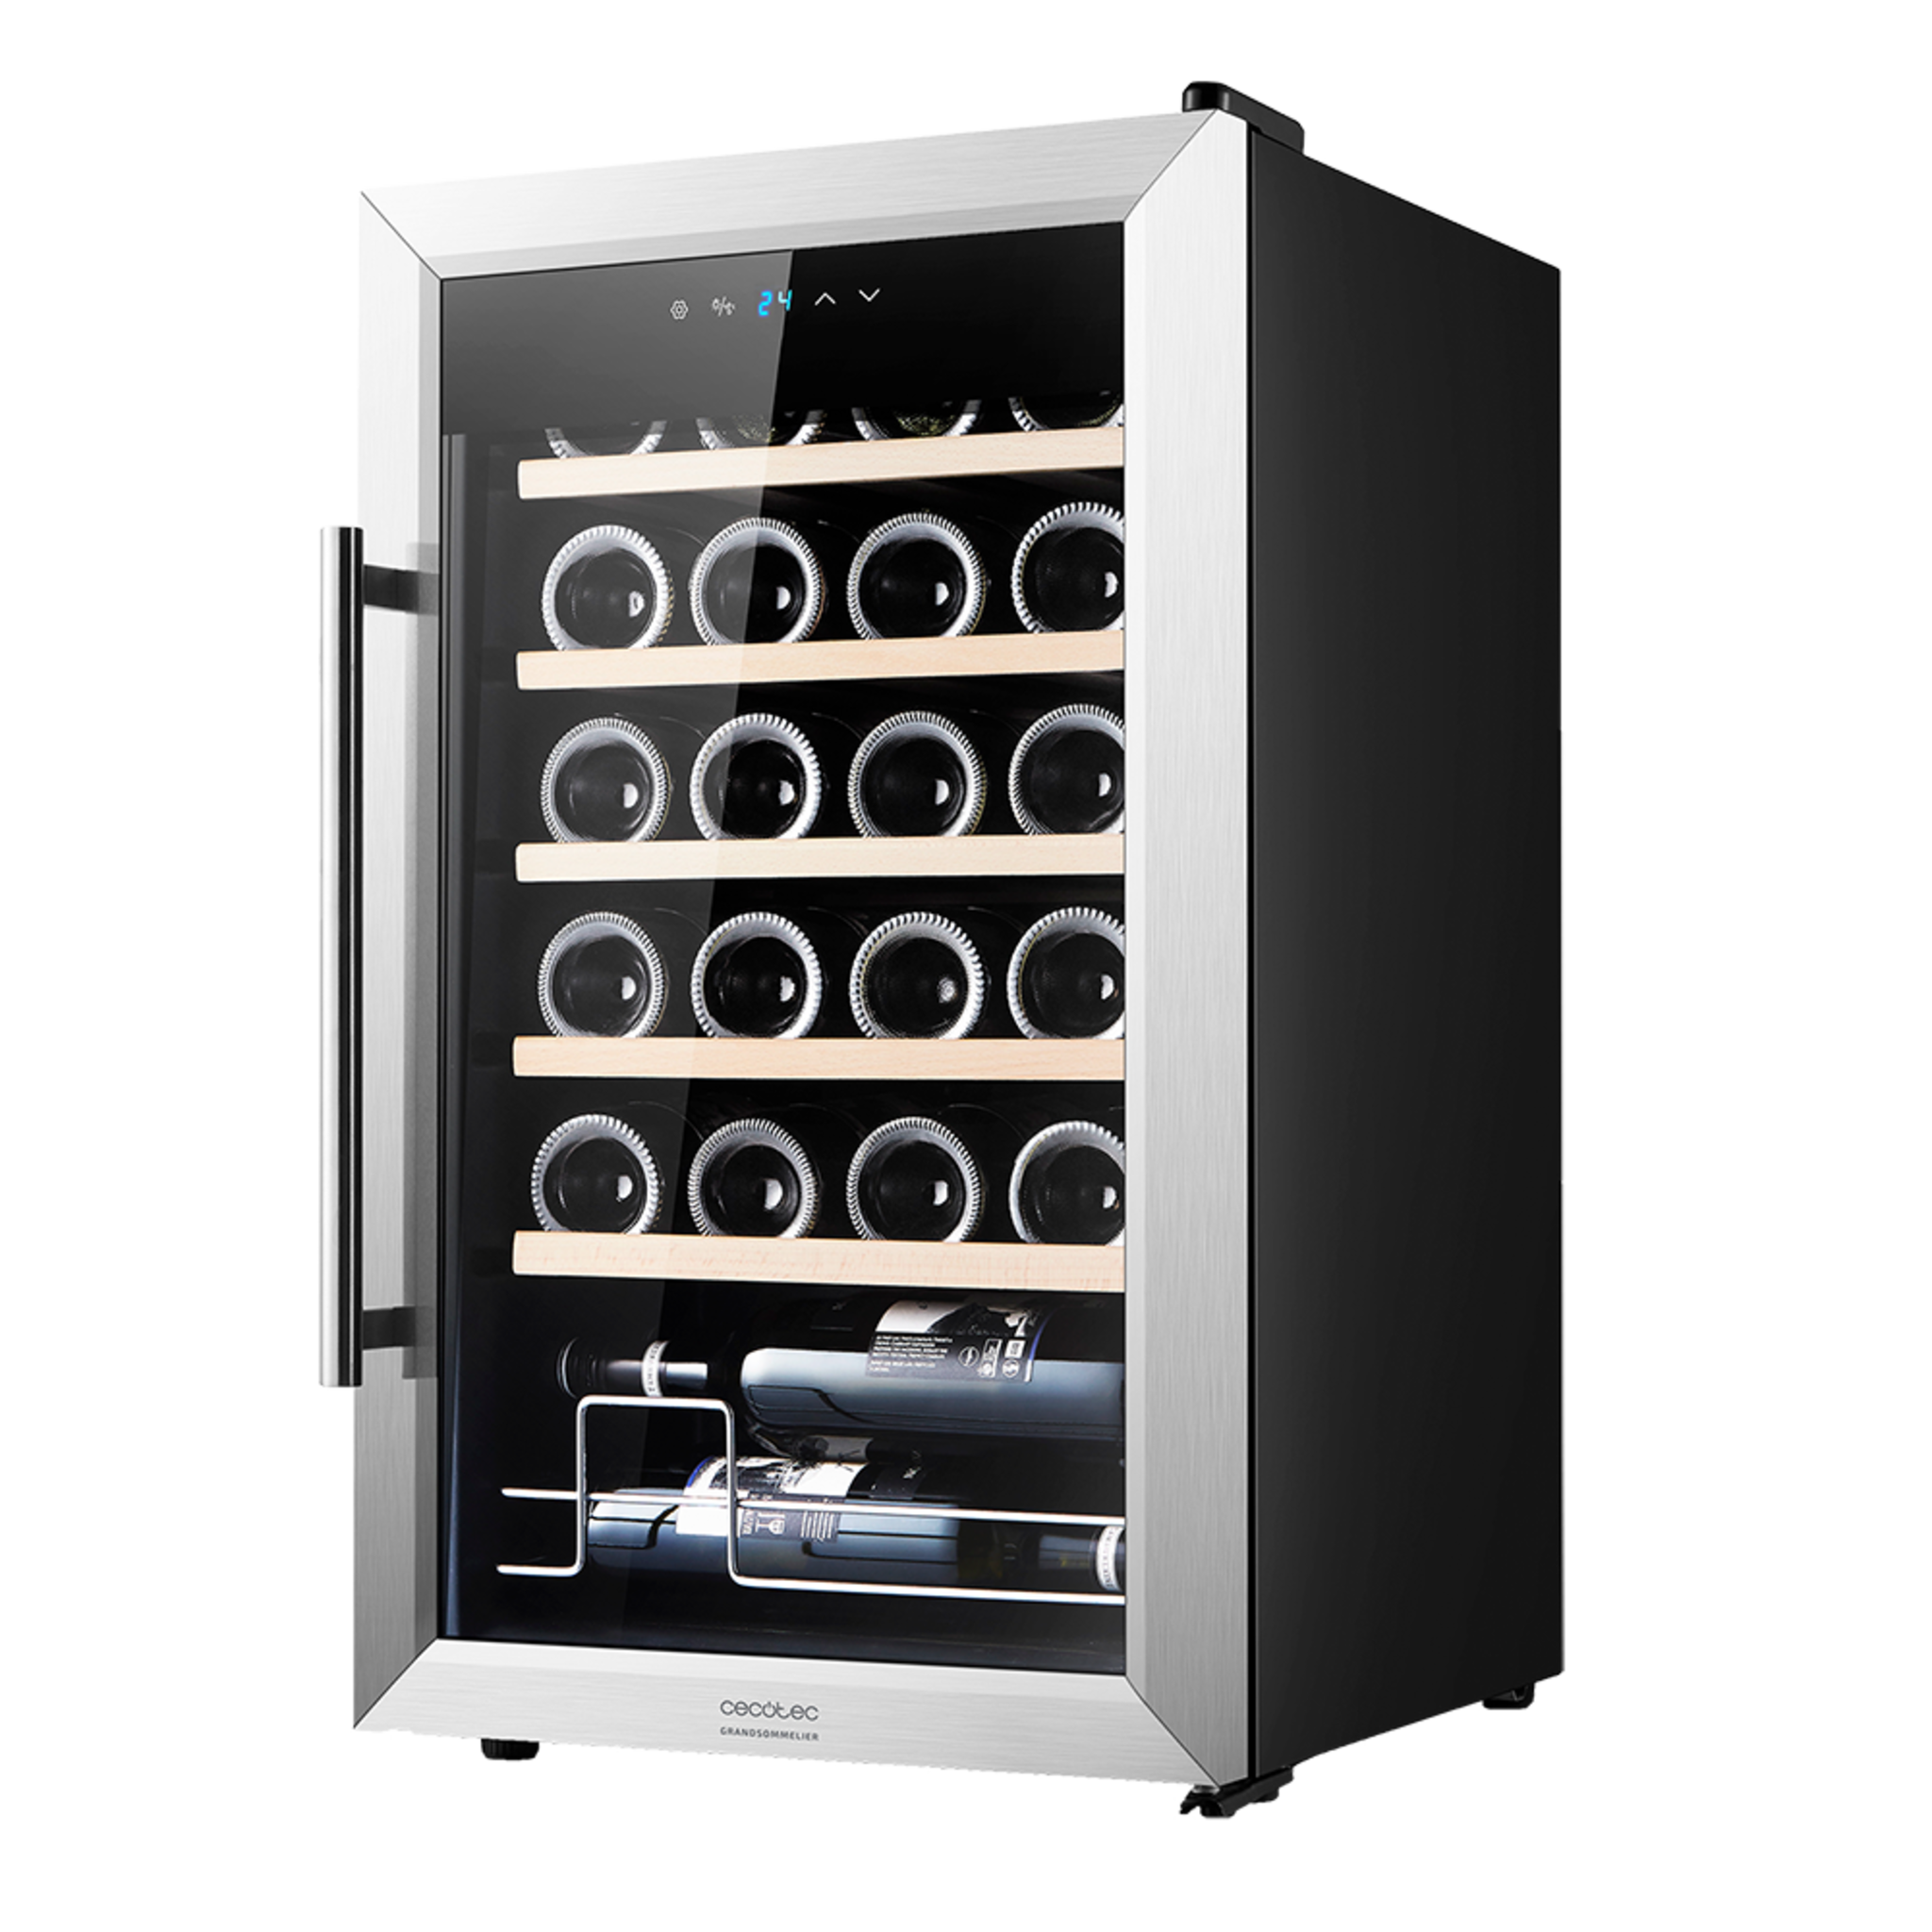 Cantinetta vino GrandSommelier 24000 Inox Compressor. 24 bottiglie, compressore, rendimento elevato garantito, temperatura regolabile e luce LED interna